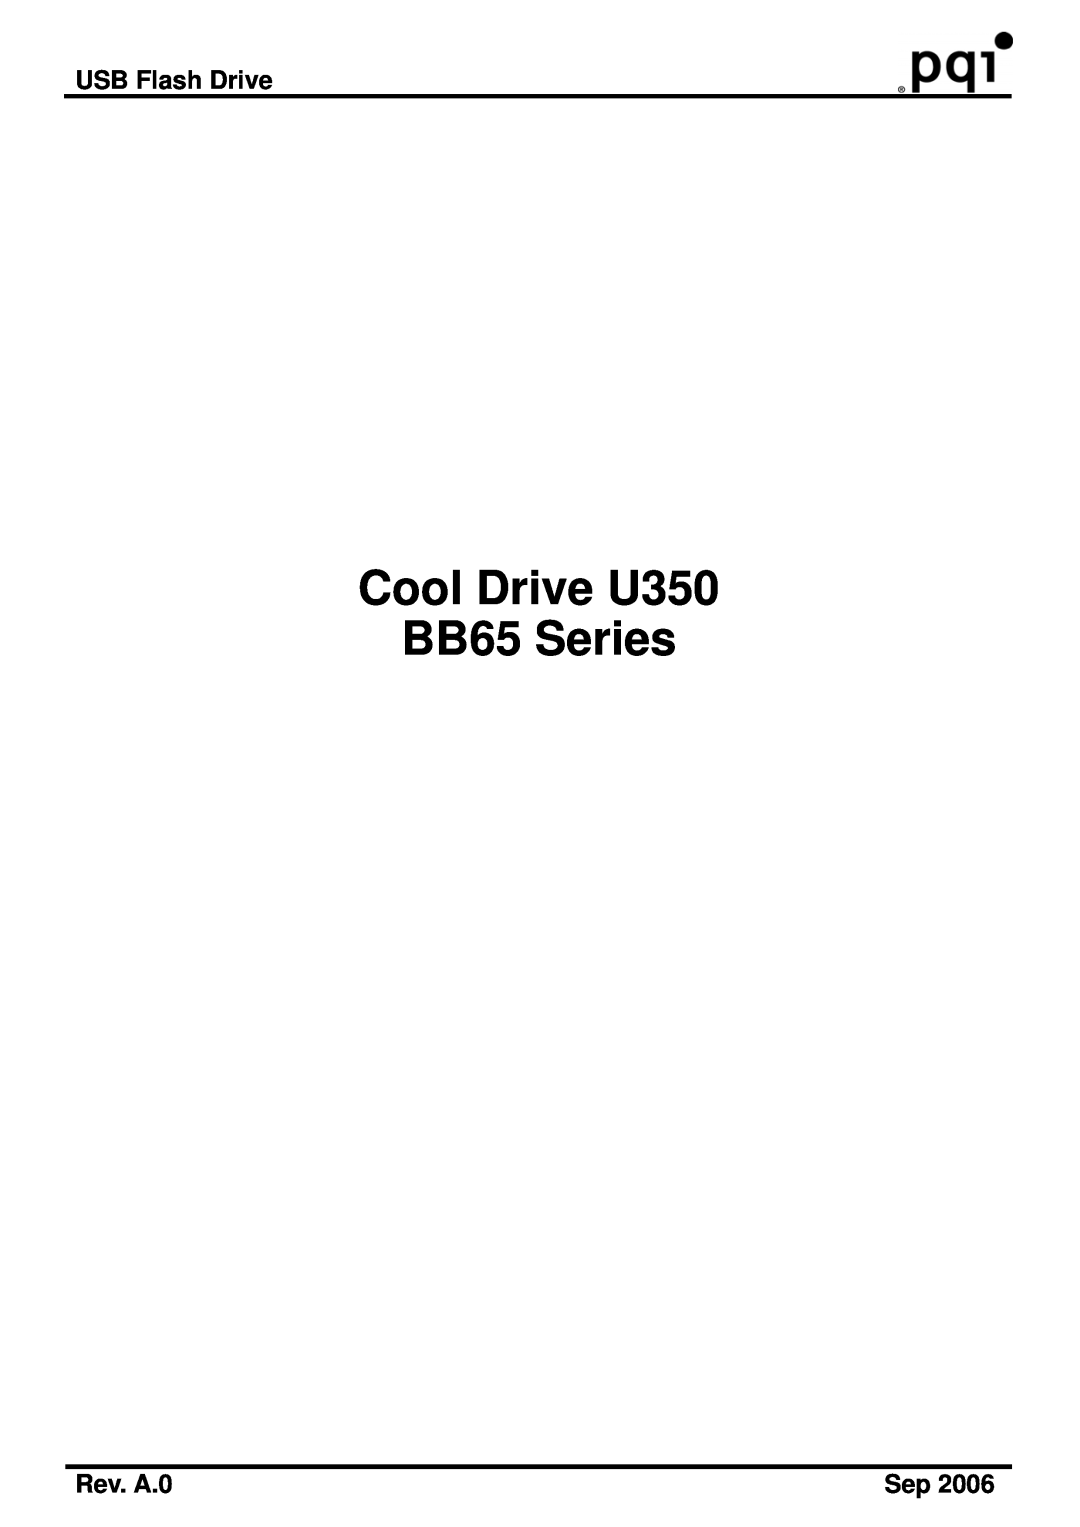 PQI manual USB Flash Drive, Rev. A.0, Cool Drive U350 BB65 Series 